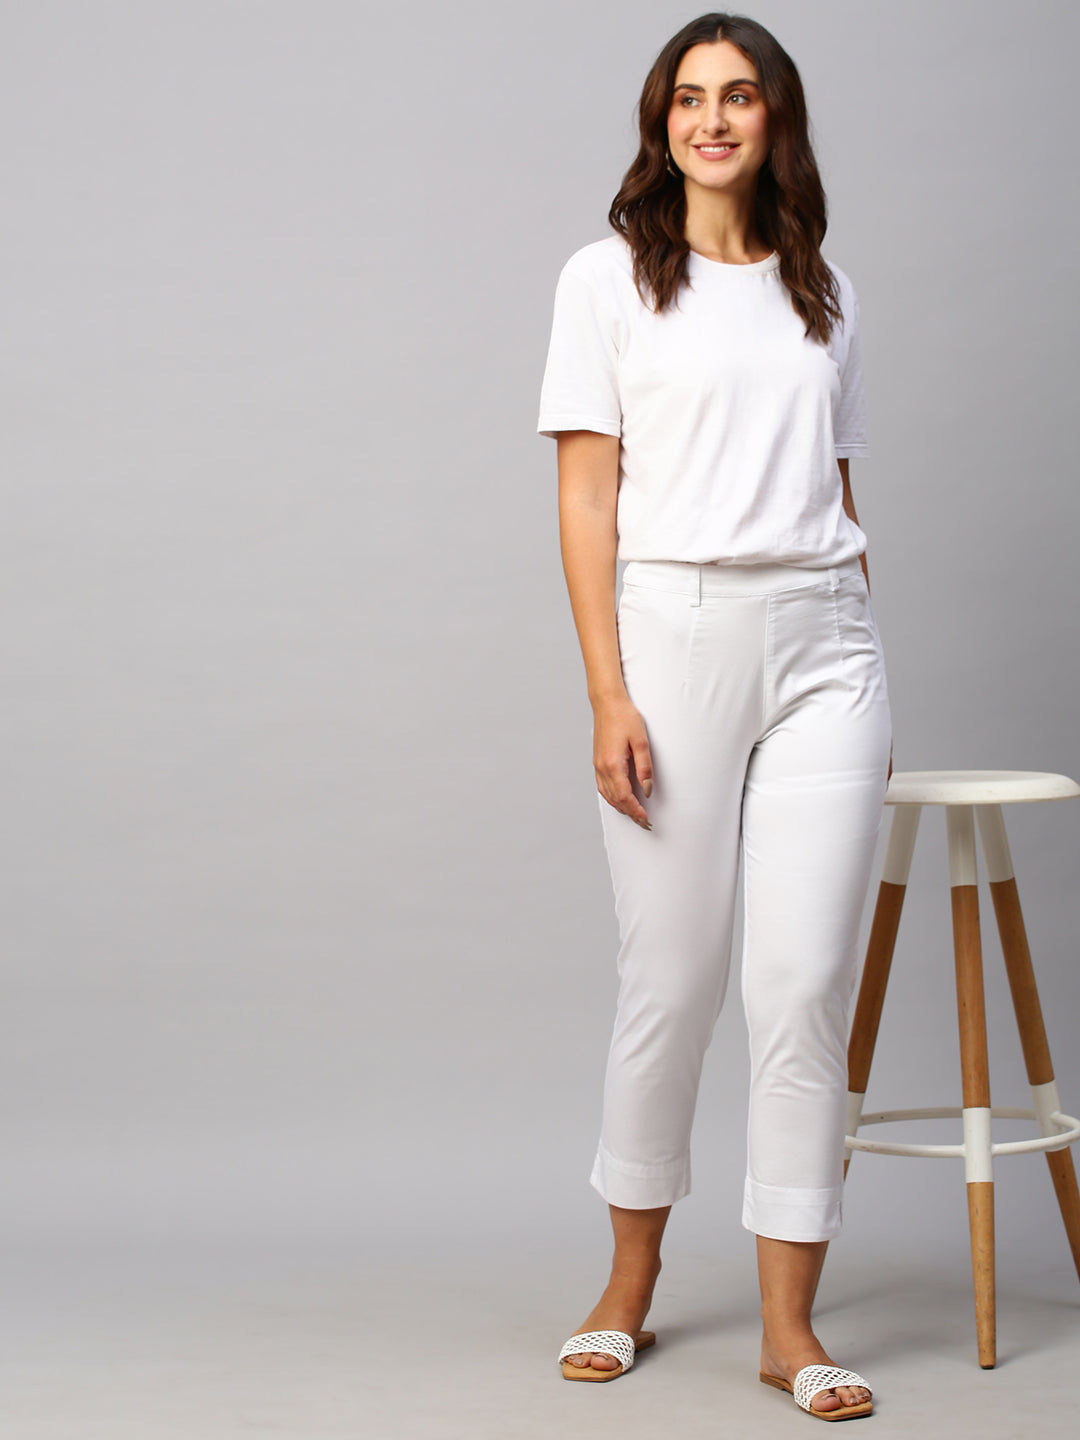 Buy Women's Cotton Lycra Semi-Formal Wear Regular Fit Pants